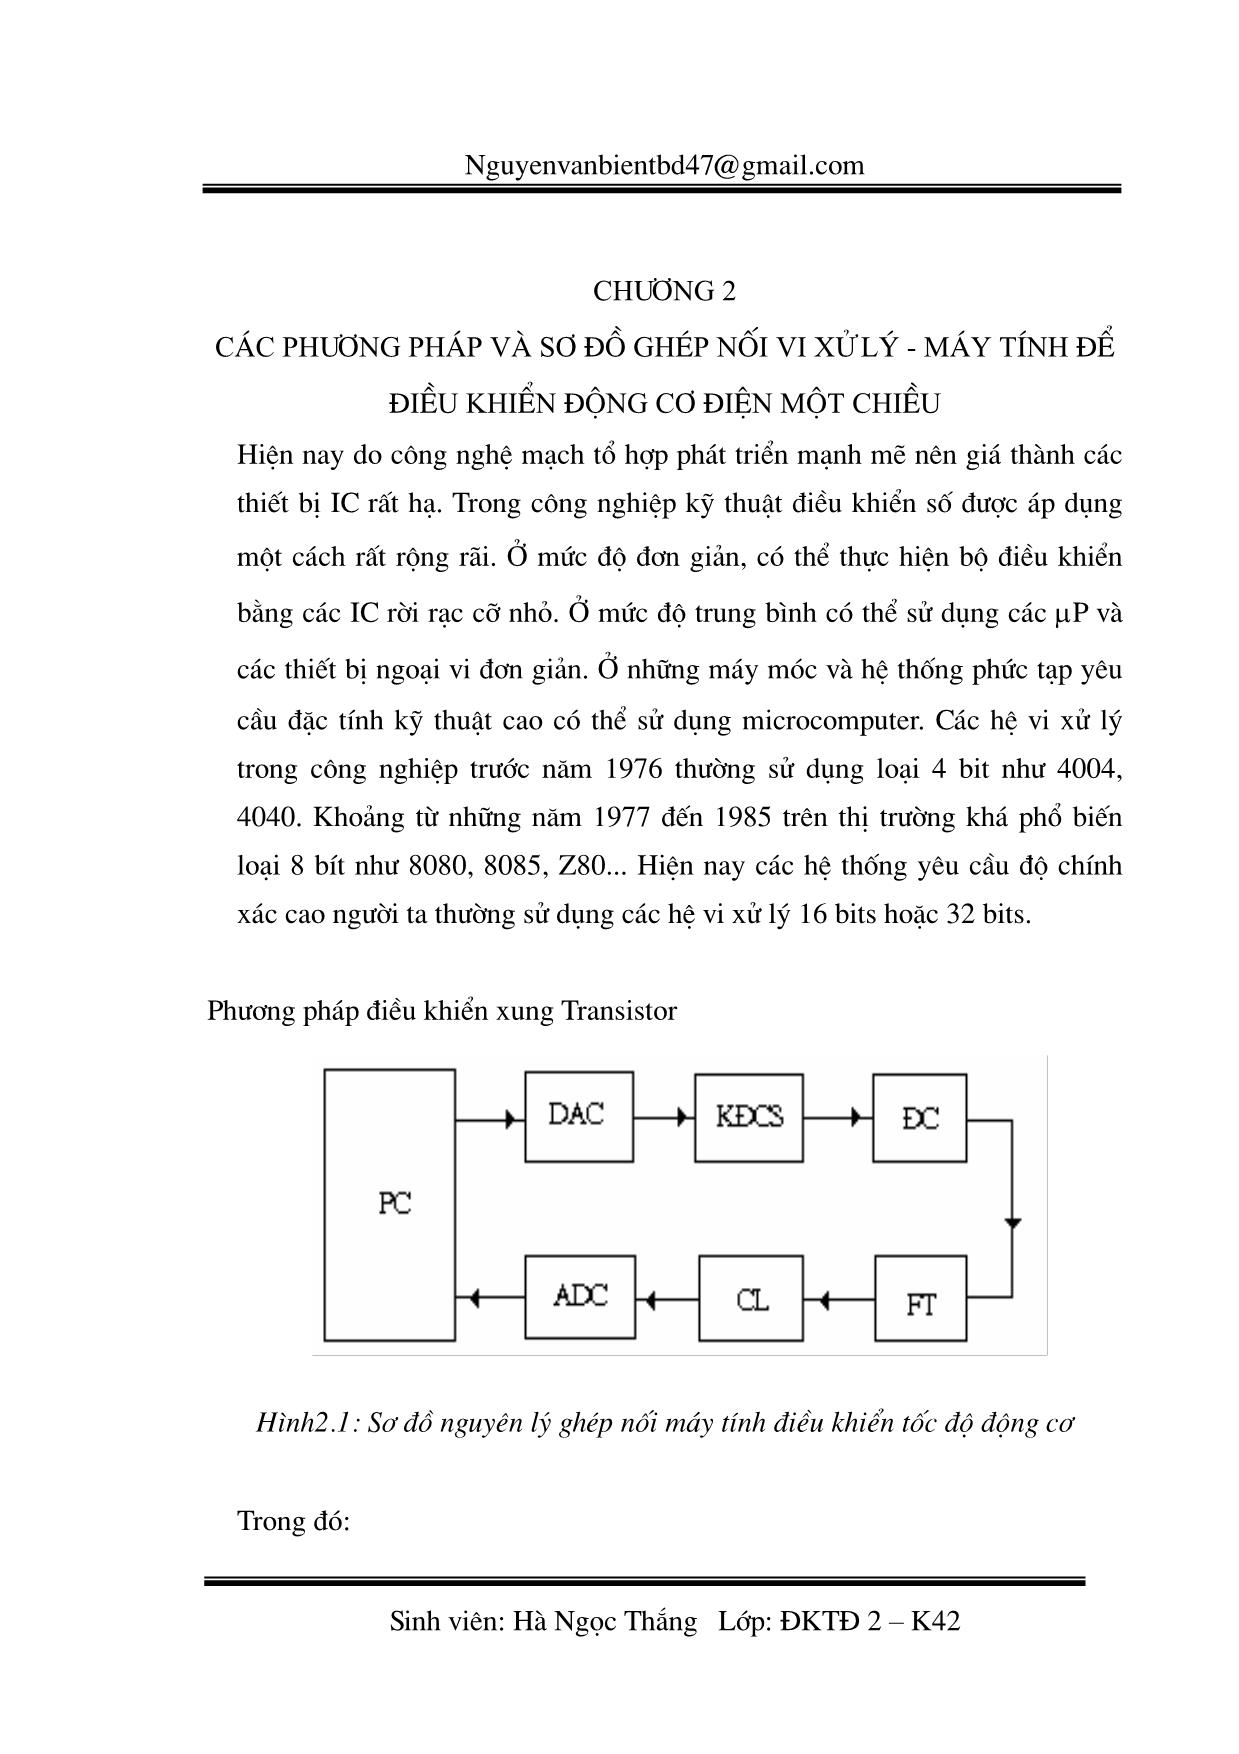 Giáo trình Vi xử lý - Chương 2: Các phương pháp và sơ đồ ghép nối vi xử lý. Máy tính để điều khiển động cơ điện một chiều trang 1